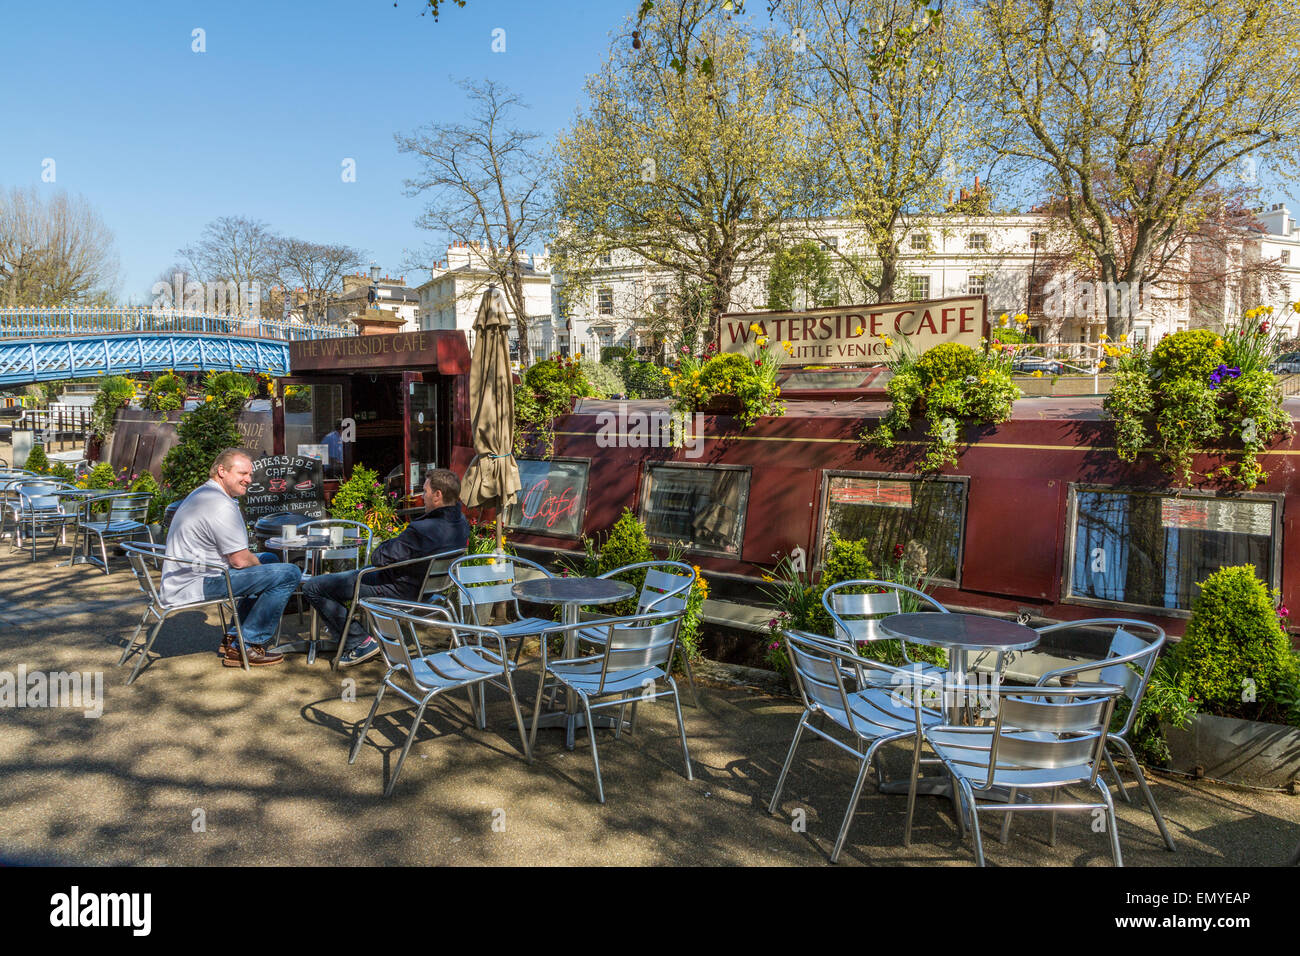 Ein Landschaftsbild des Waterside Cafe an einem hellen sonnigen Tag, Little Venice London, England, Großbritannien Stockfoto